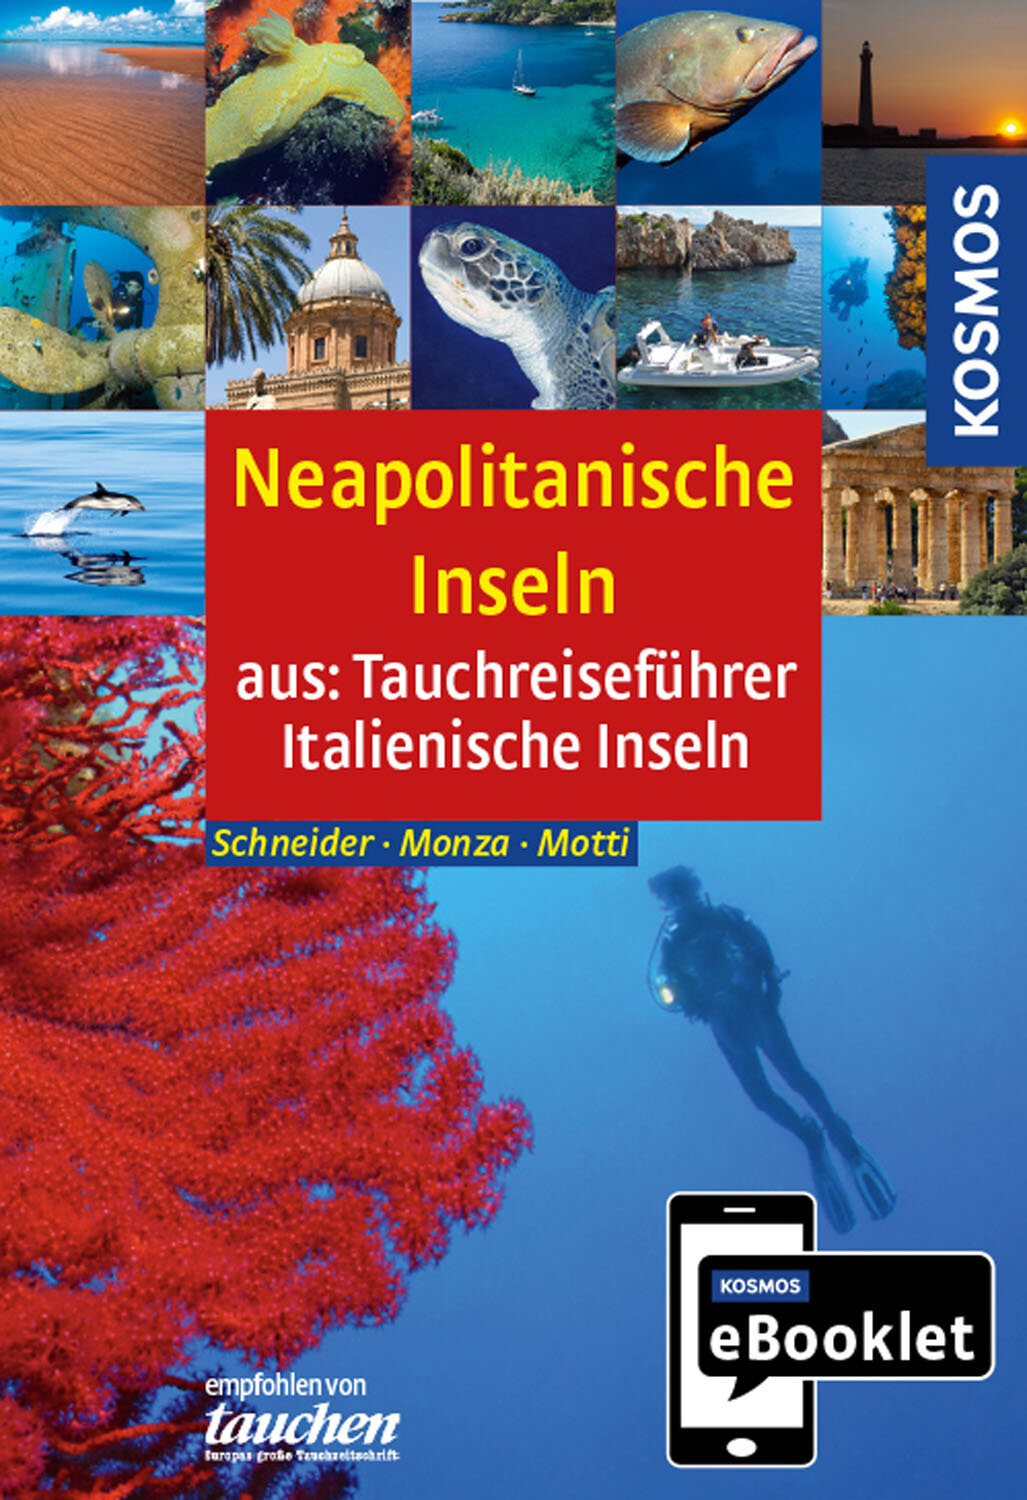 KOSMOS eBooklet: Tauchreiseführer Neapolitanische Inseln